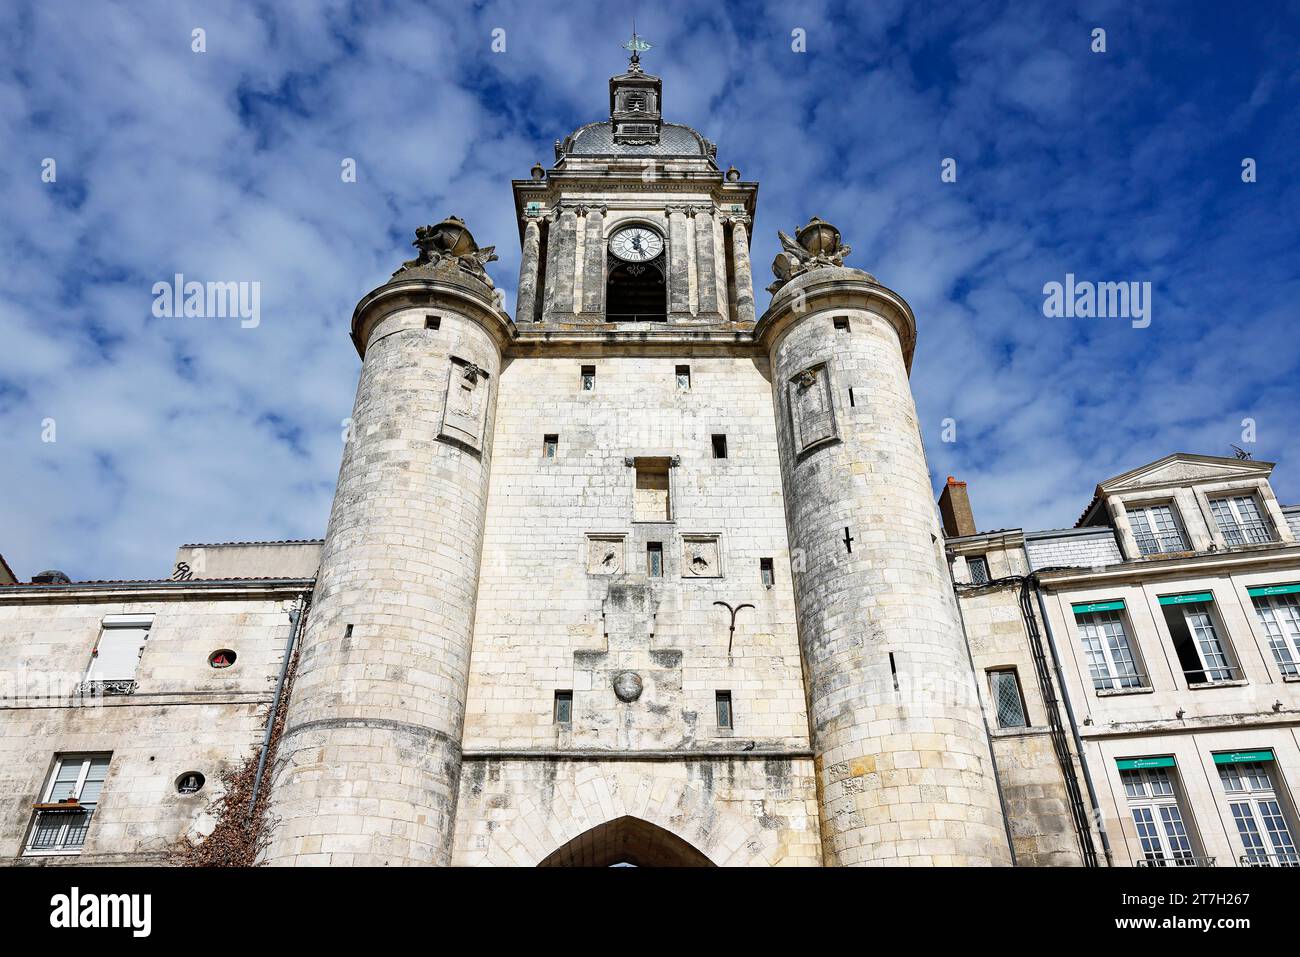 Tour de l'horloge à la Rochelle, porte de la grosse horloge, Département Charente-Maritime, France Banque D'Images